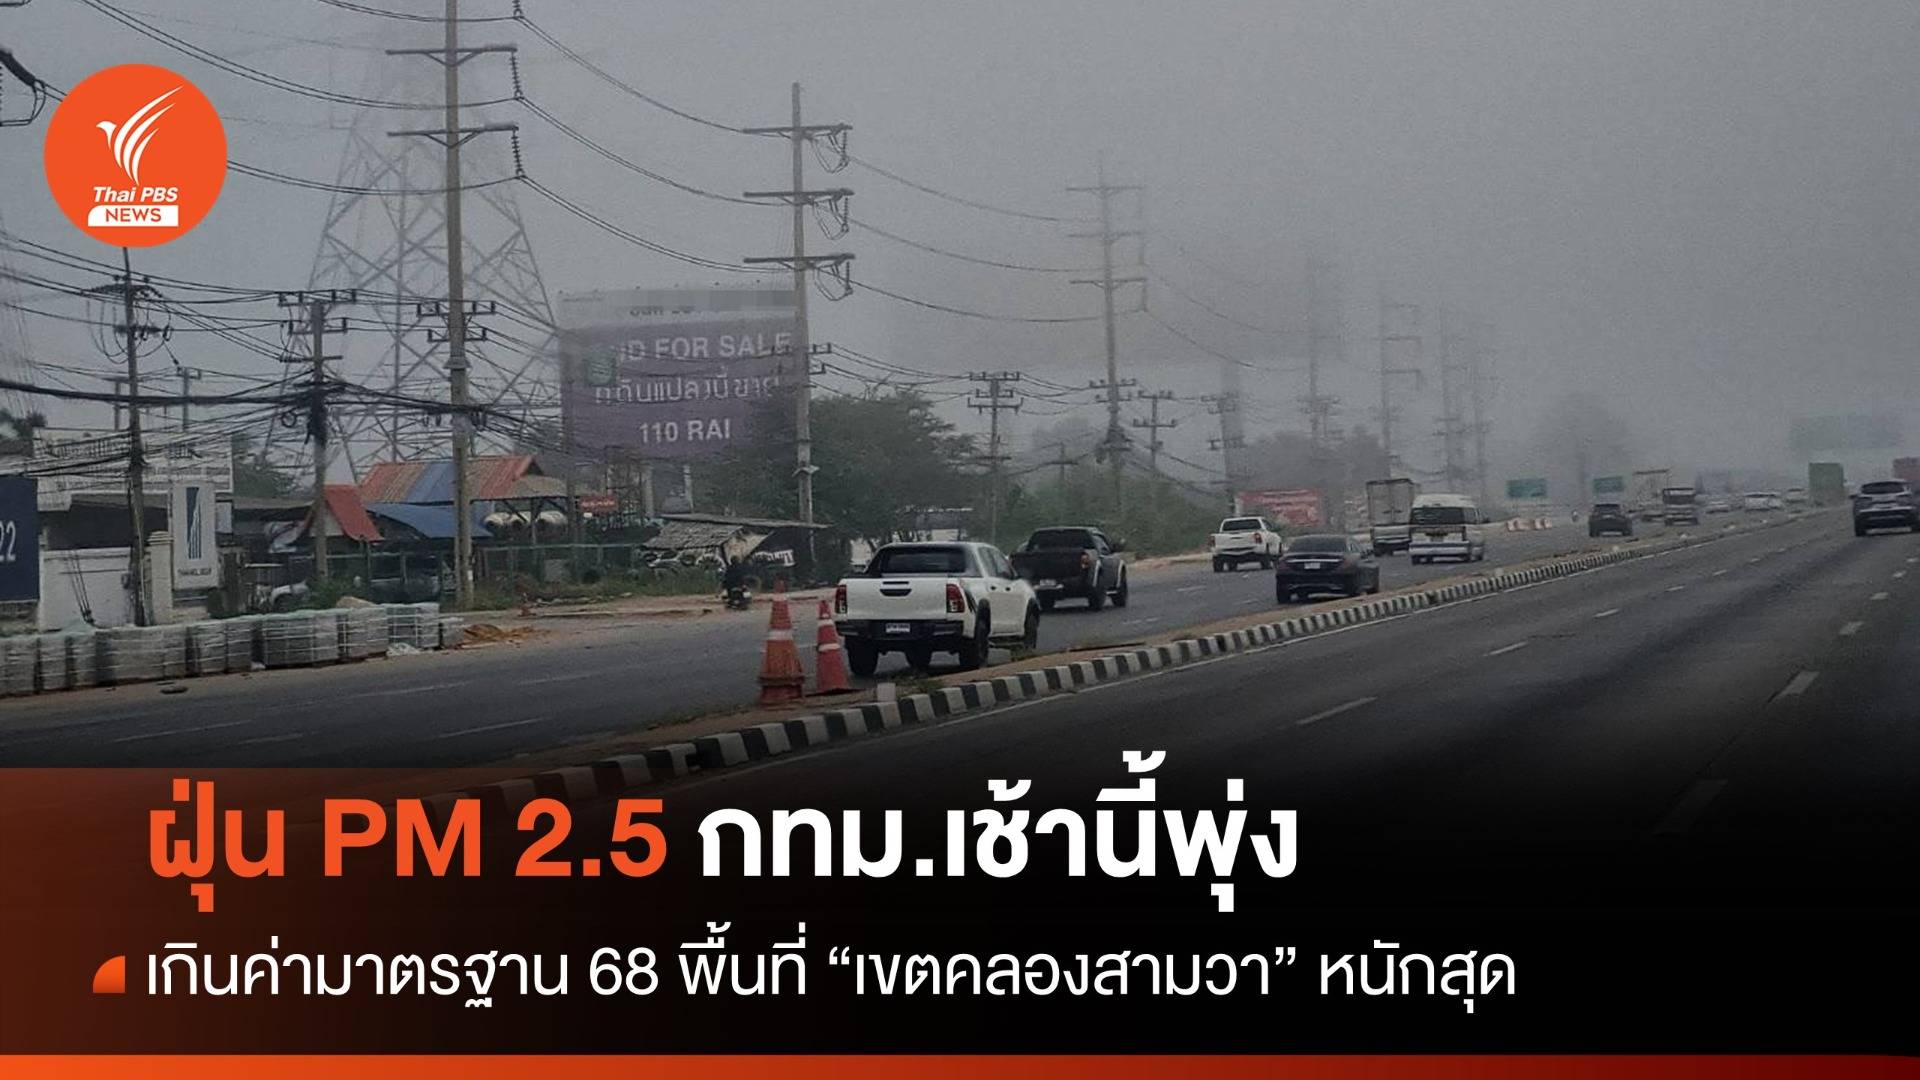 ฝุ่น PM 2.5 กทม.เกินค่ามาตรฐาน 68 พื้นที่ "คลองสามวา" หนักสุด